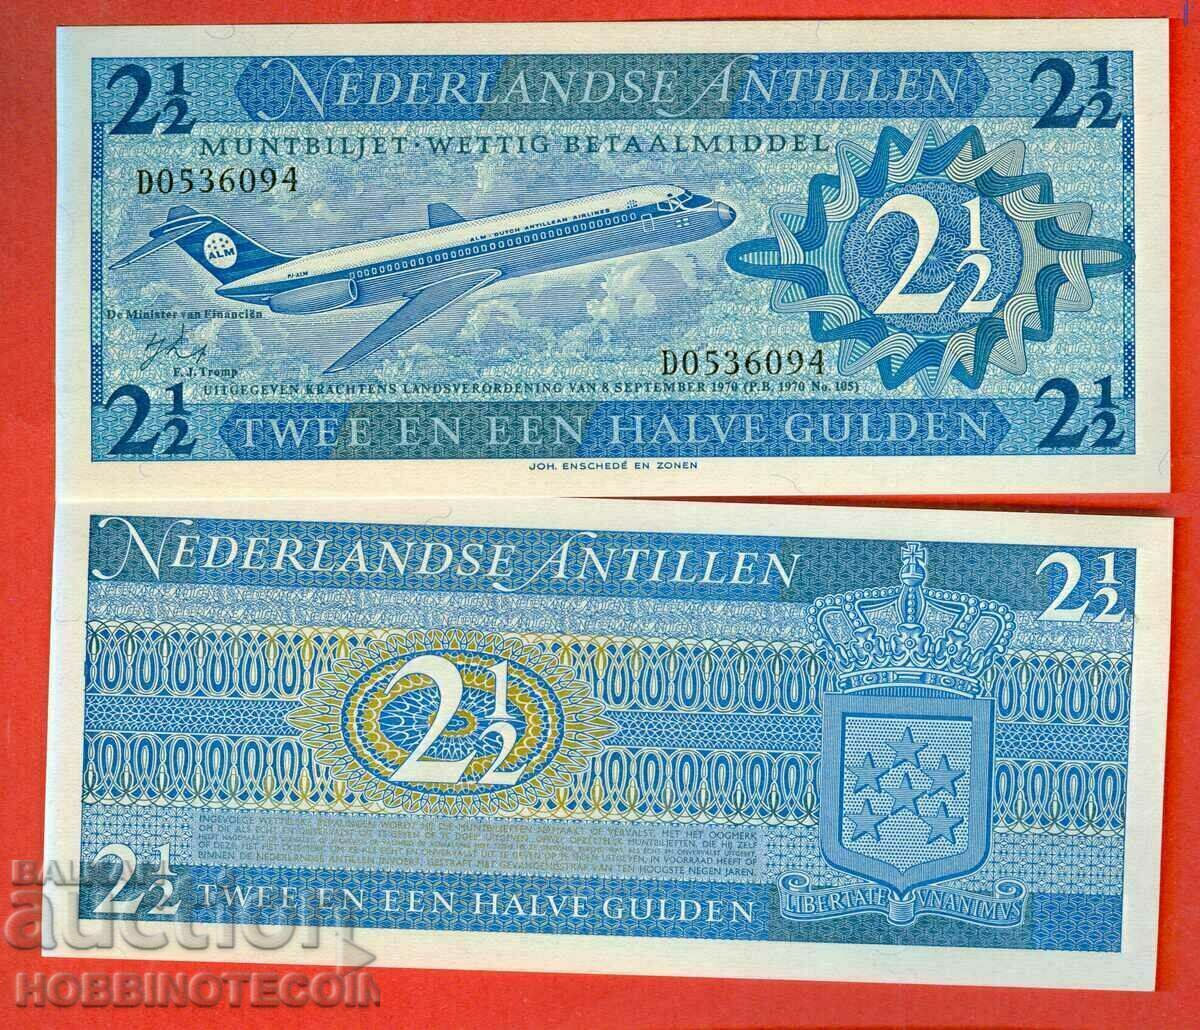 ΟΛΛΑΝΔΙΚΕΣ ΑΝΤΙΛΕΣ - 2.5 Τεύχος Gulden 1970 NEW UNC